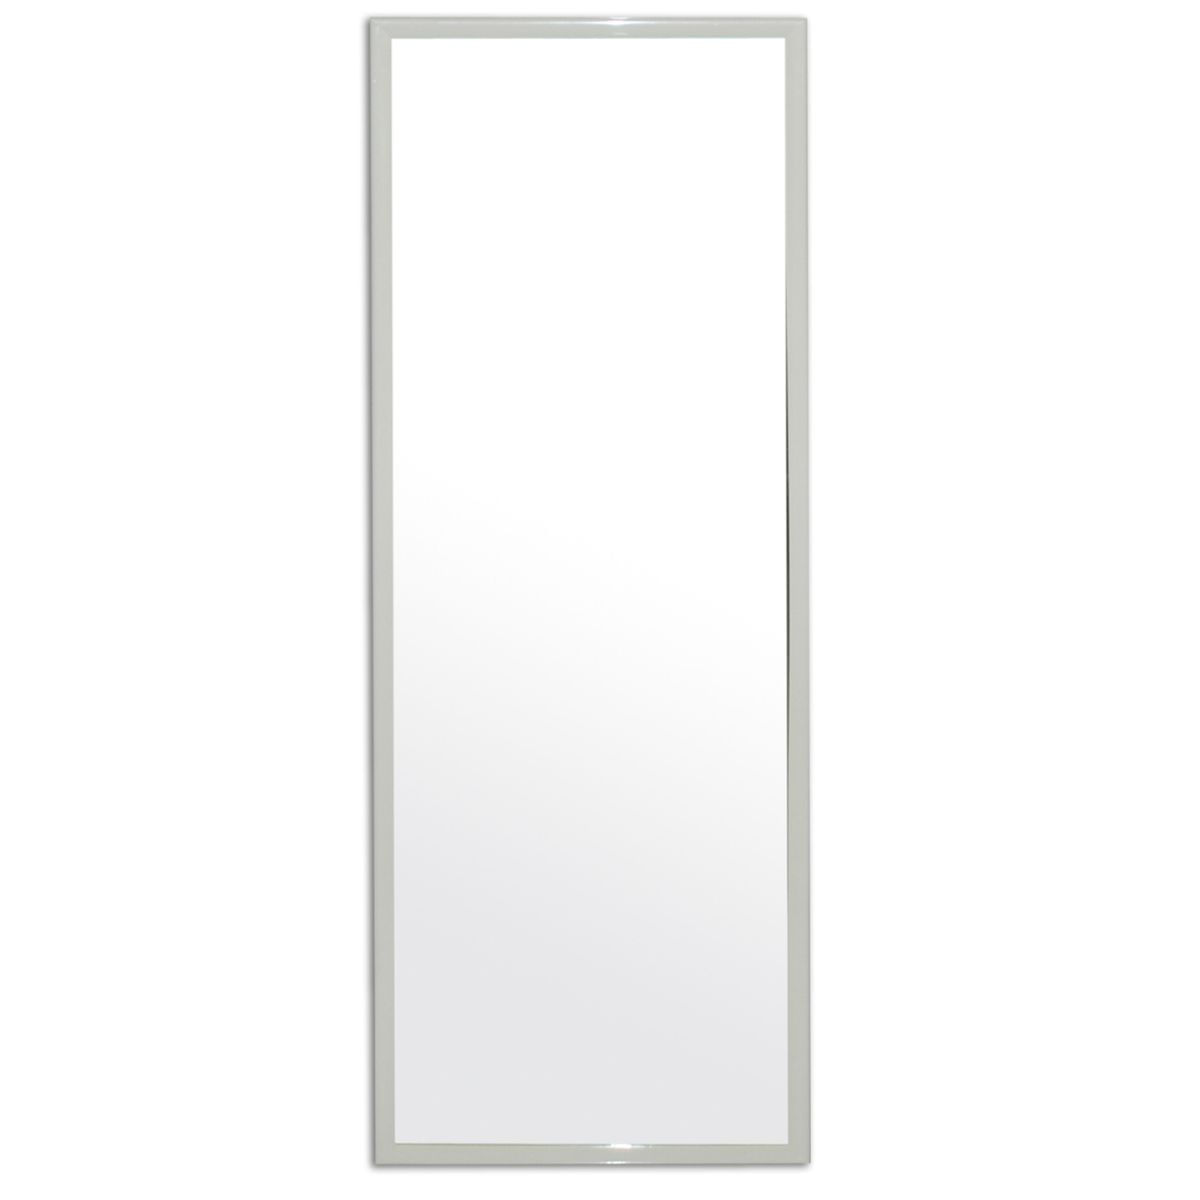 Espelho Emoldurado Retangular 90x30cm Carrefour - HO55216